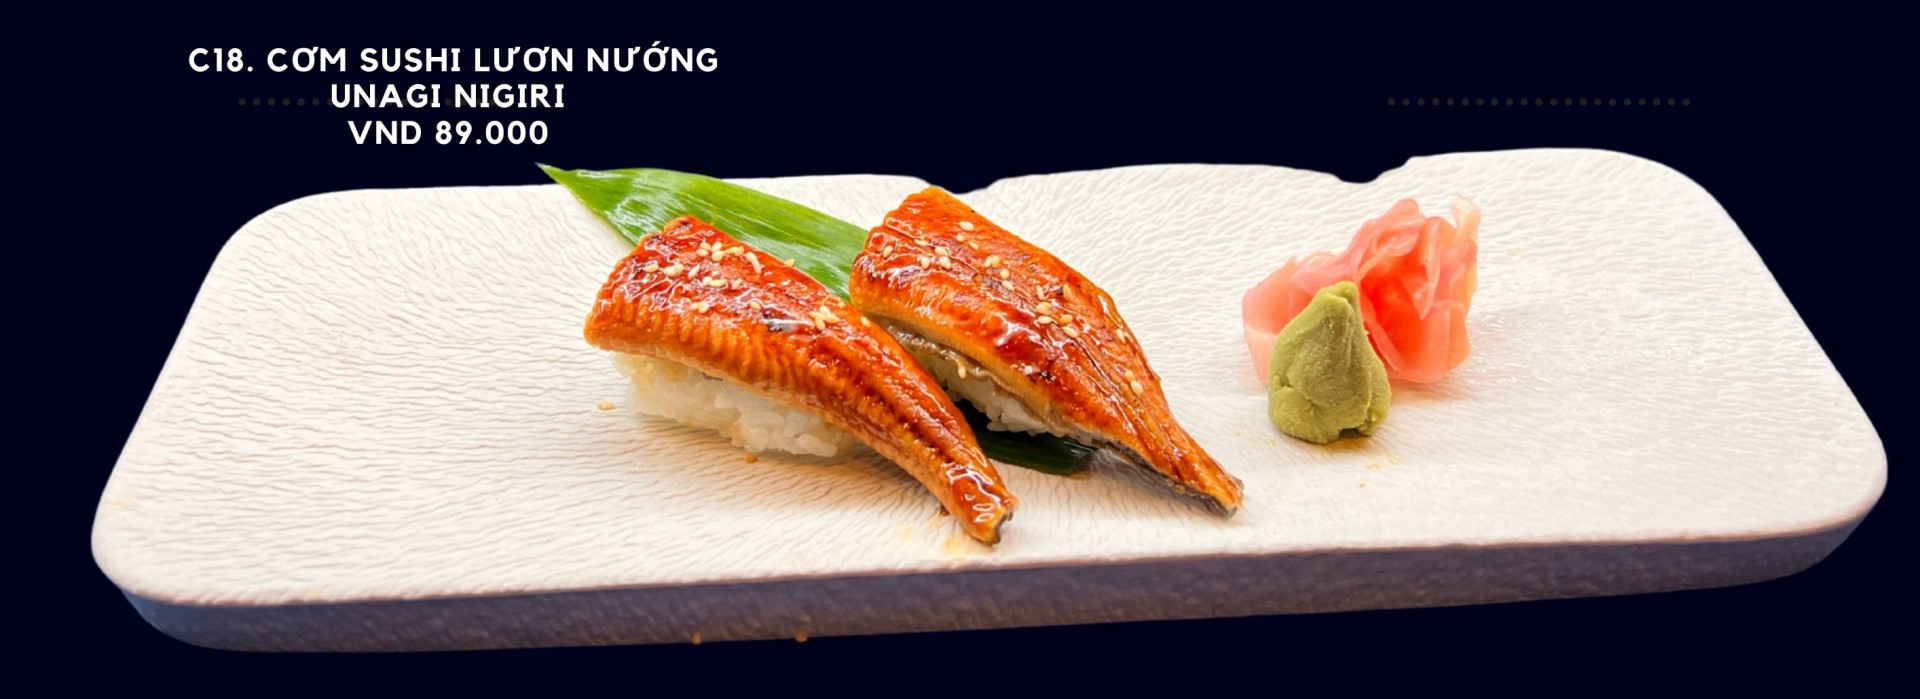 C18. Cơm sushi lươn nướng Unagi nigiri